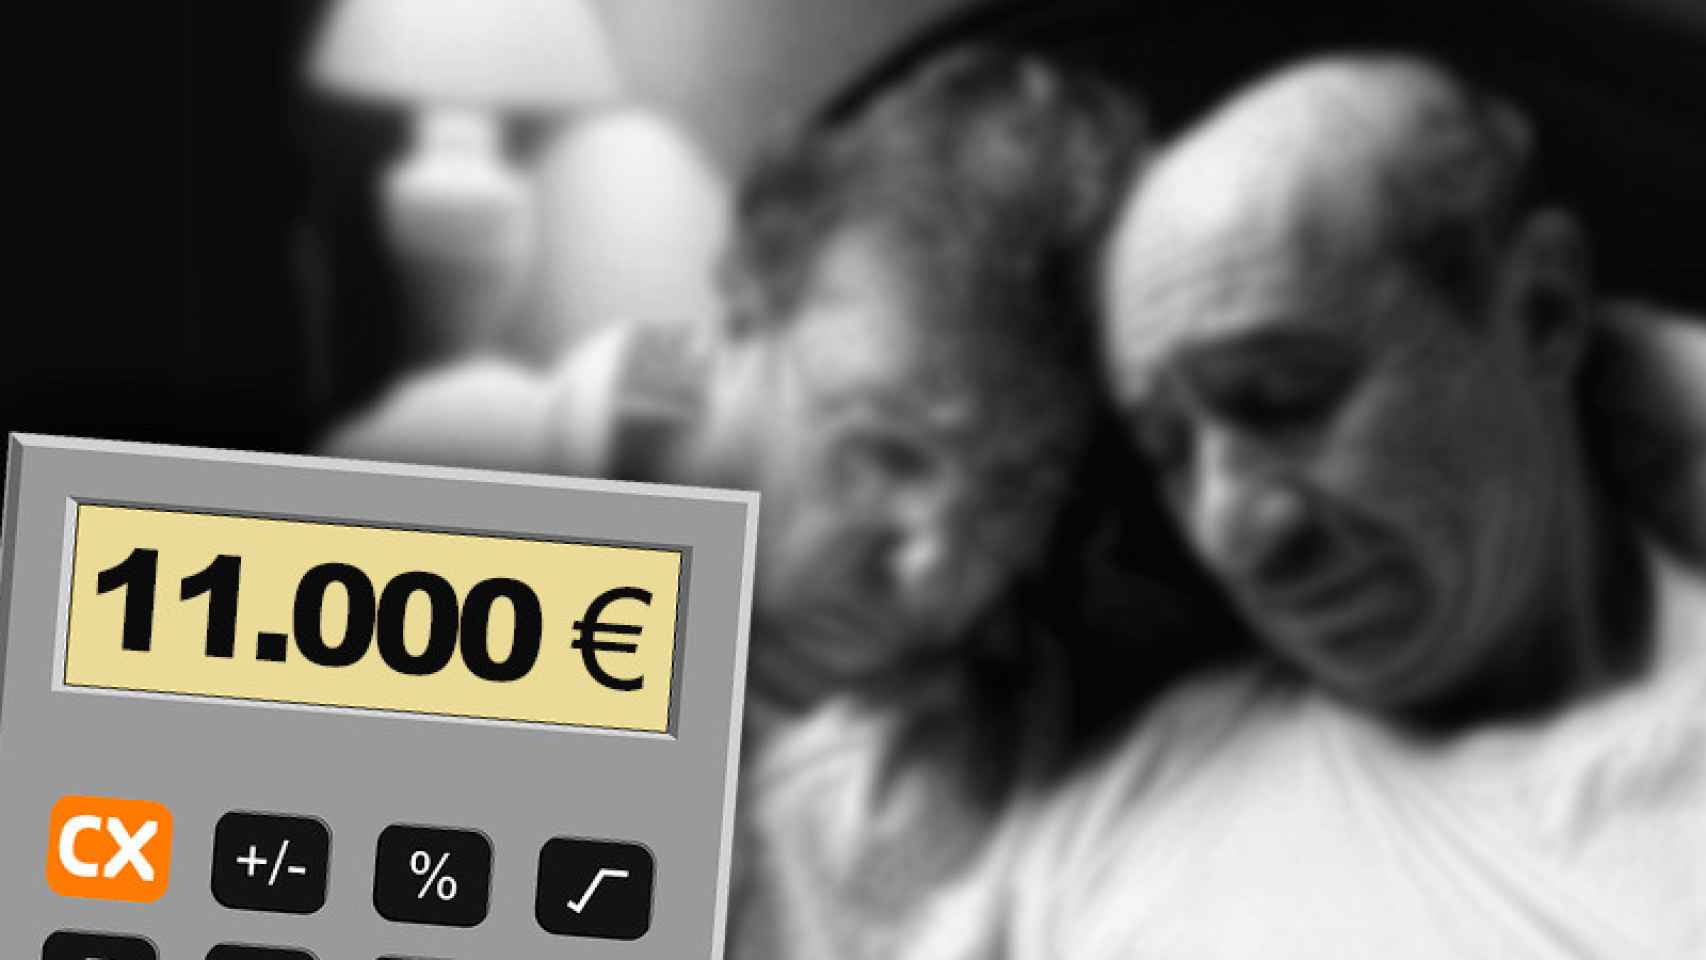 Catalunya Banc (CX) endosó un seguro de deceso de prima única por valor de 11.000 euros a un cliente de 89 años